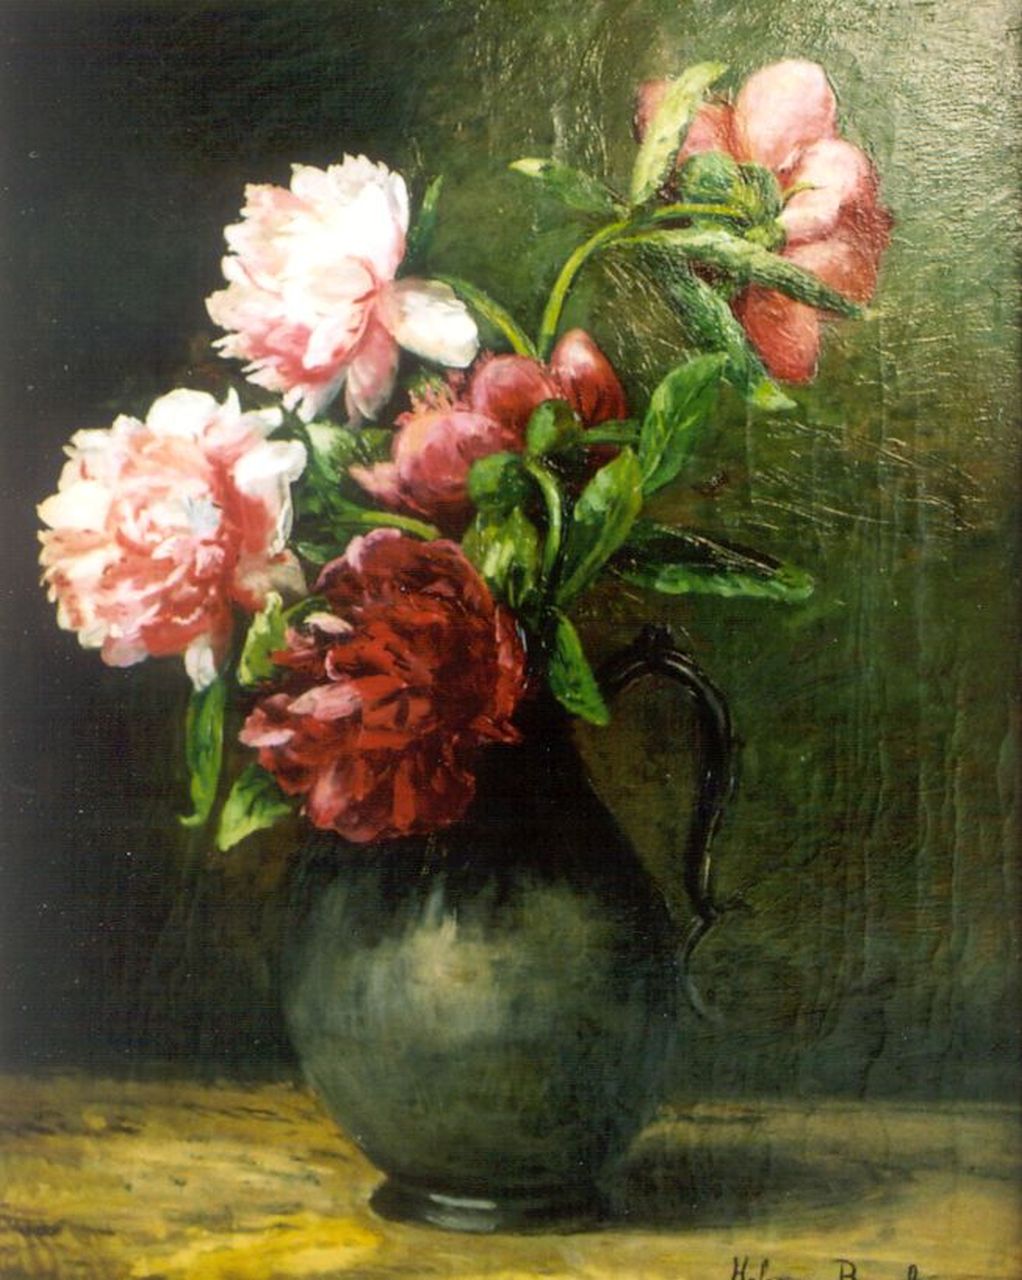 Borselen H.M. van | Helena Maria van Borselen, A flower still life, Öl auf Leinwand 40,0 x 60,0 cm, signed l.r.